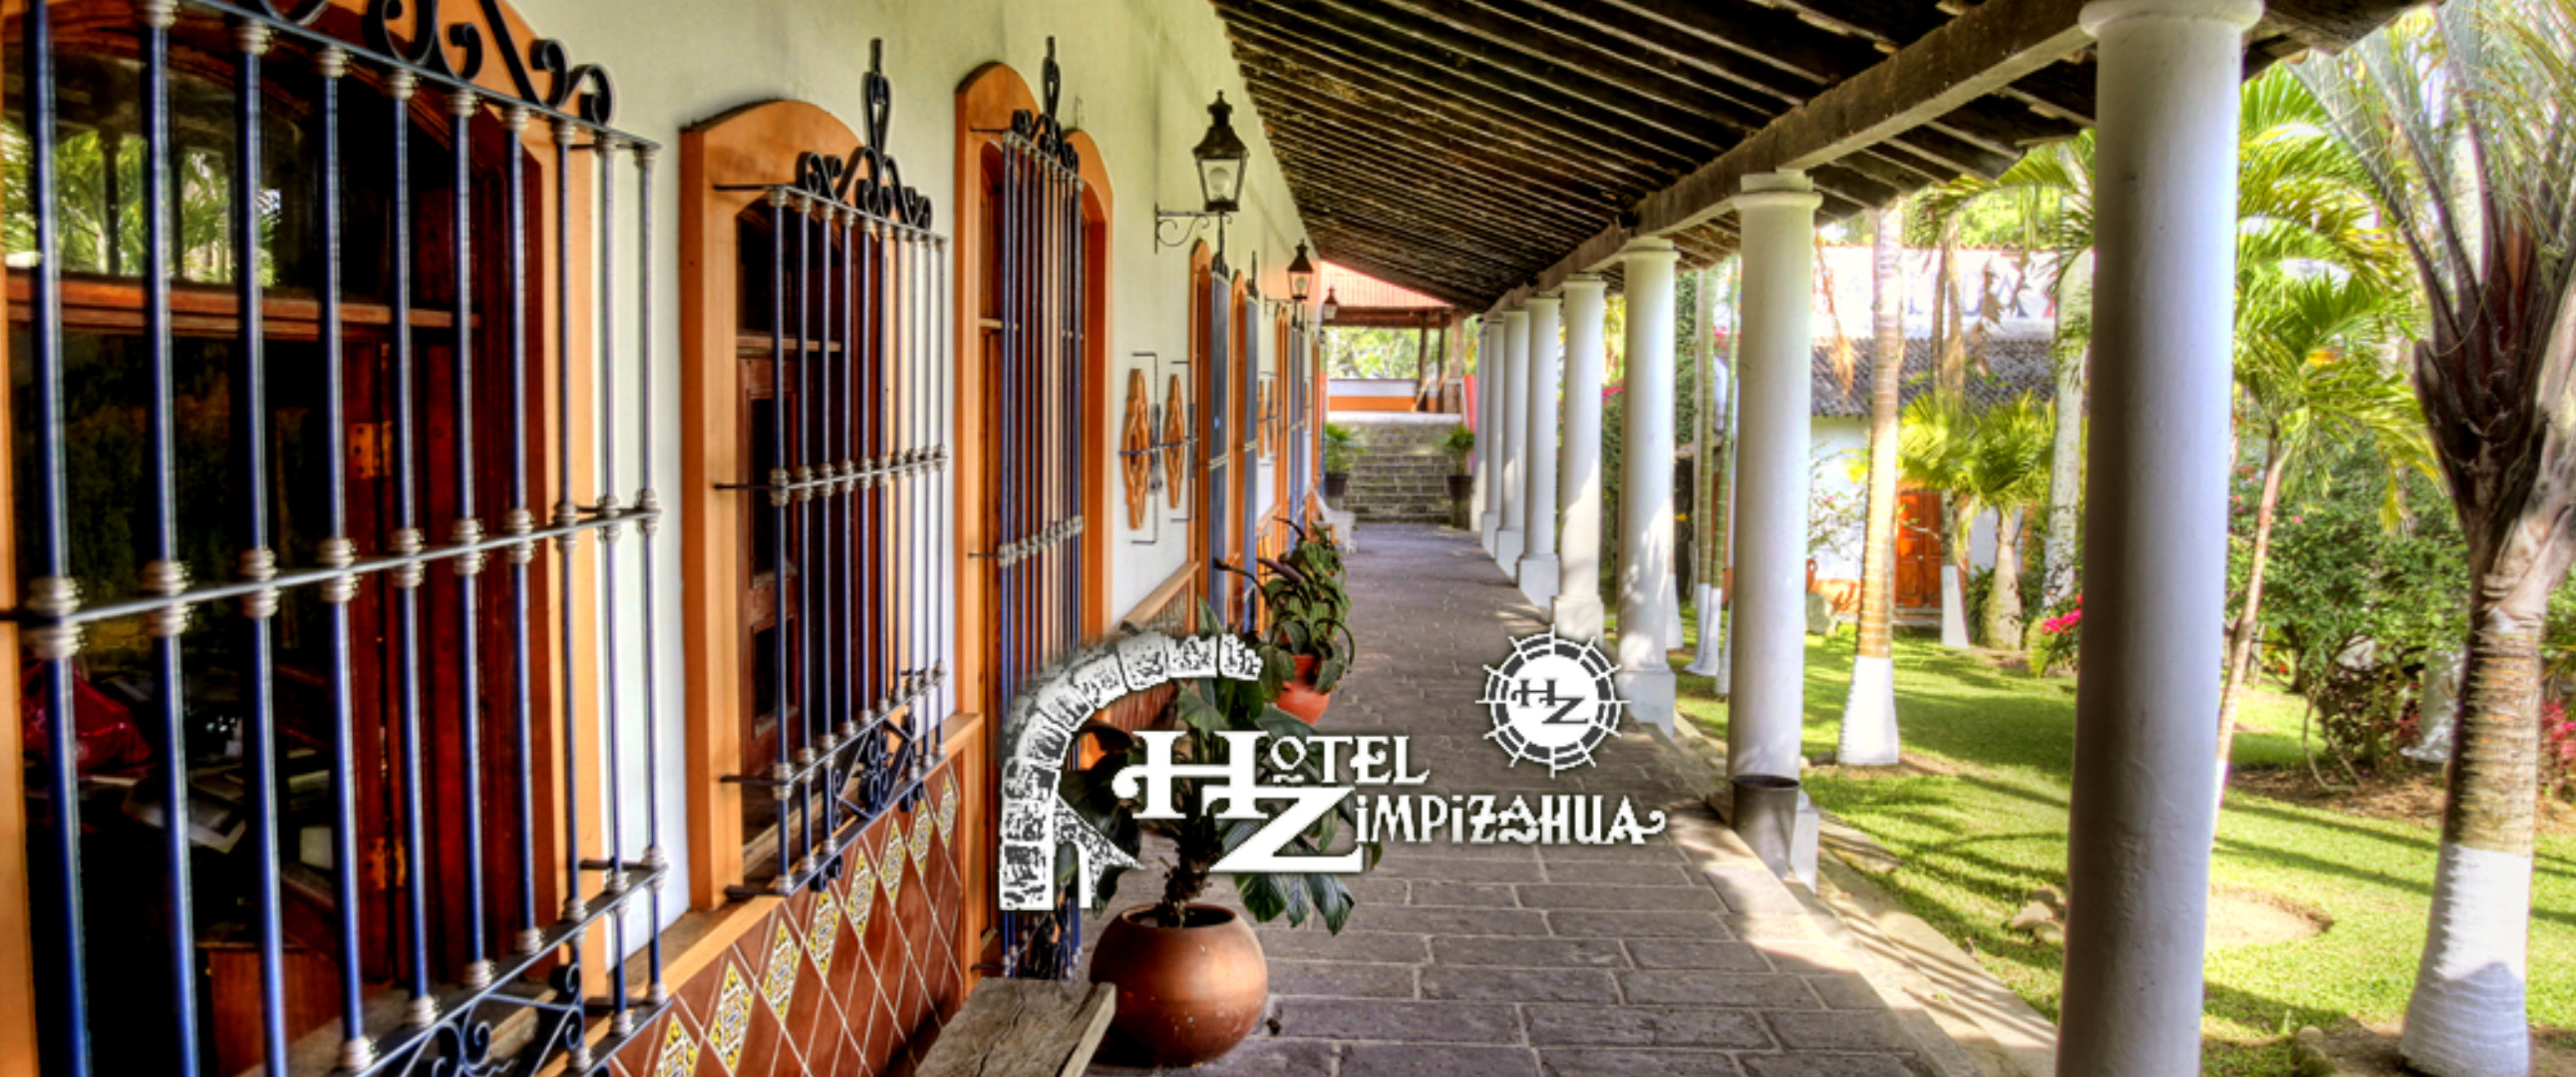 Otra Fotografía de la hacienda zimpizahua